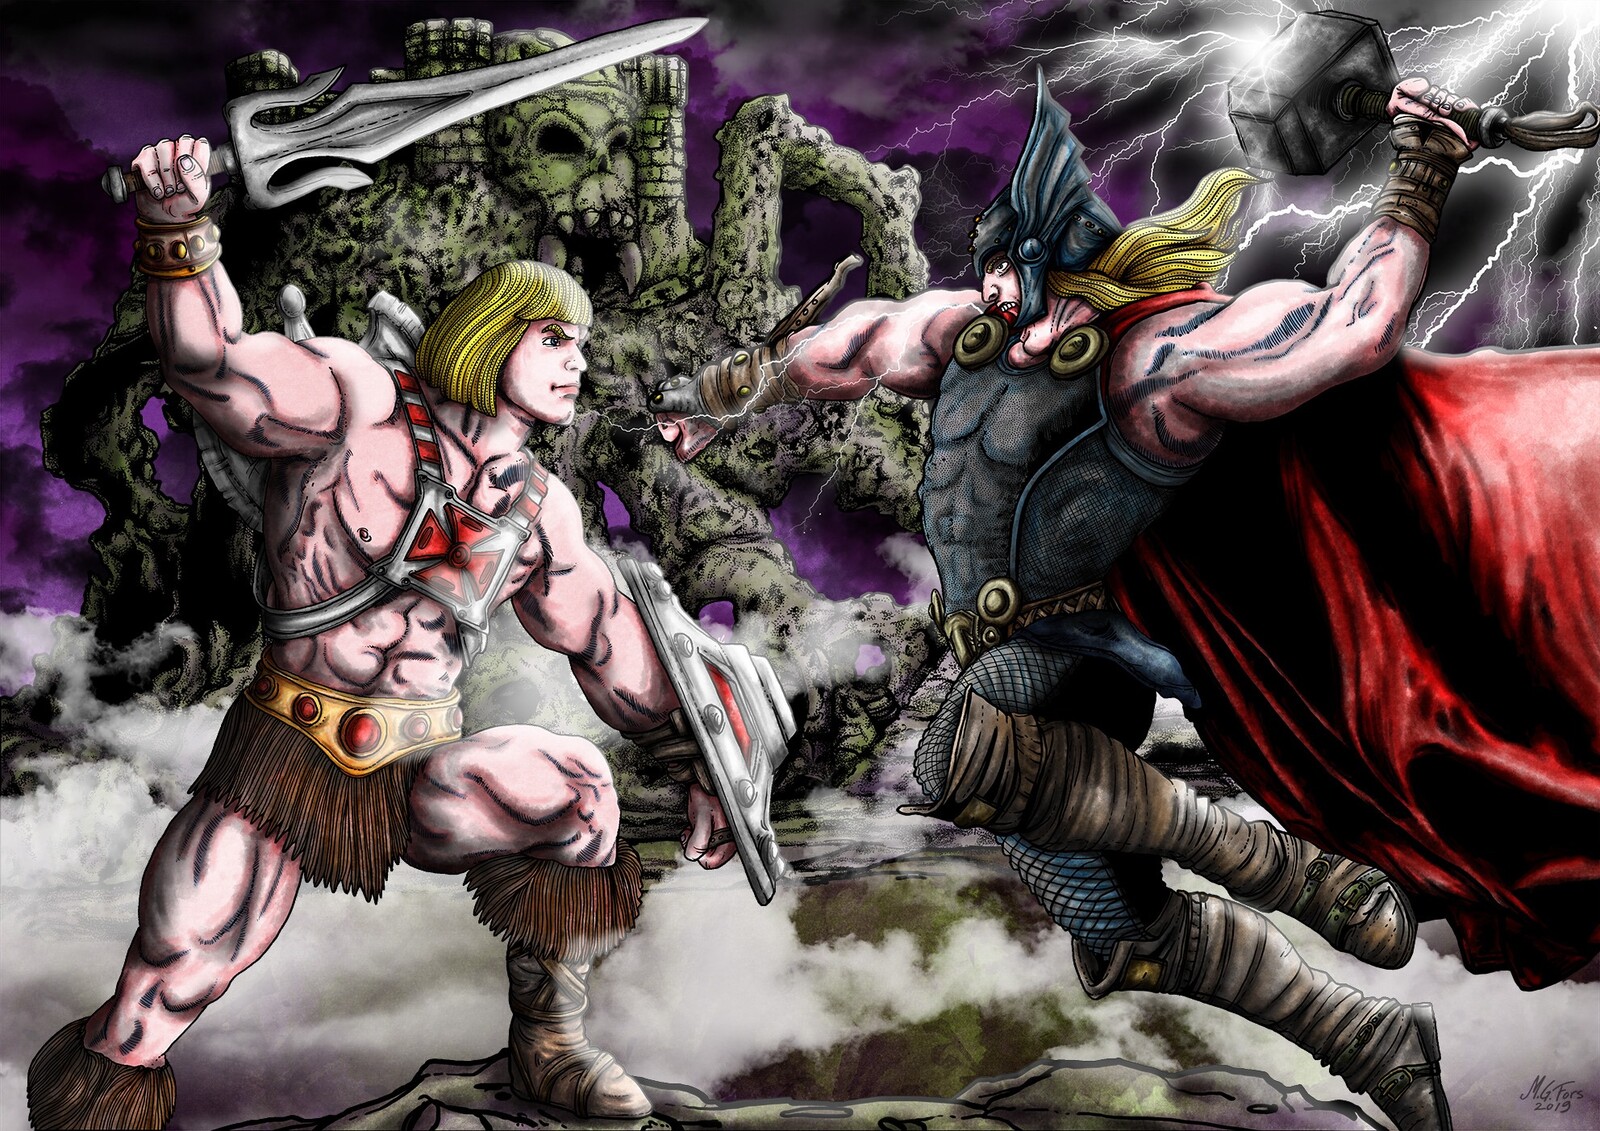 He-Man versus Thor